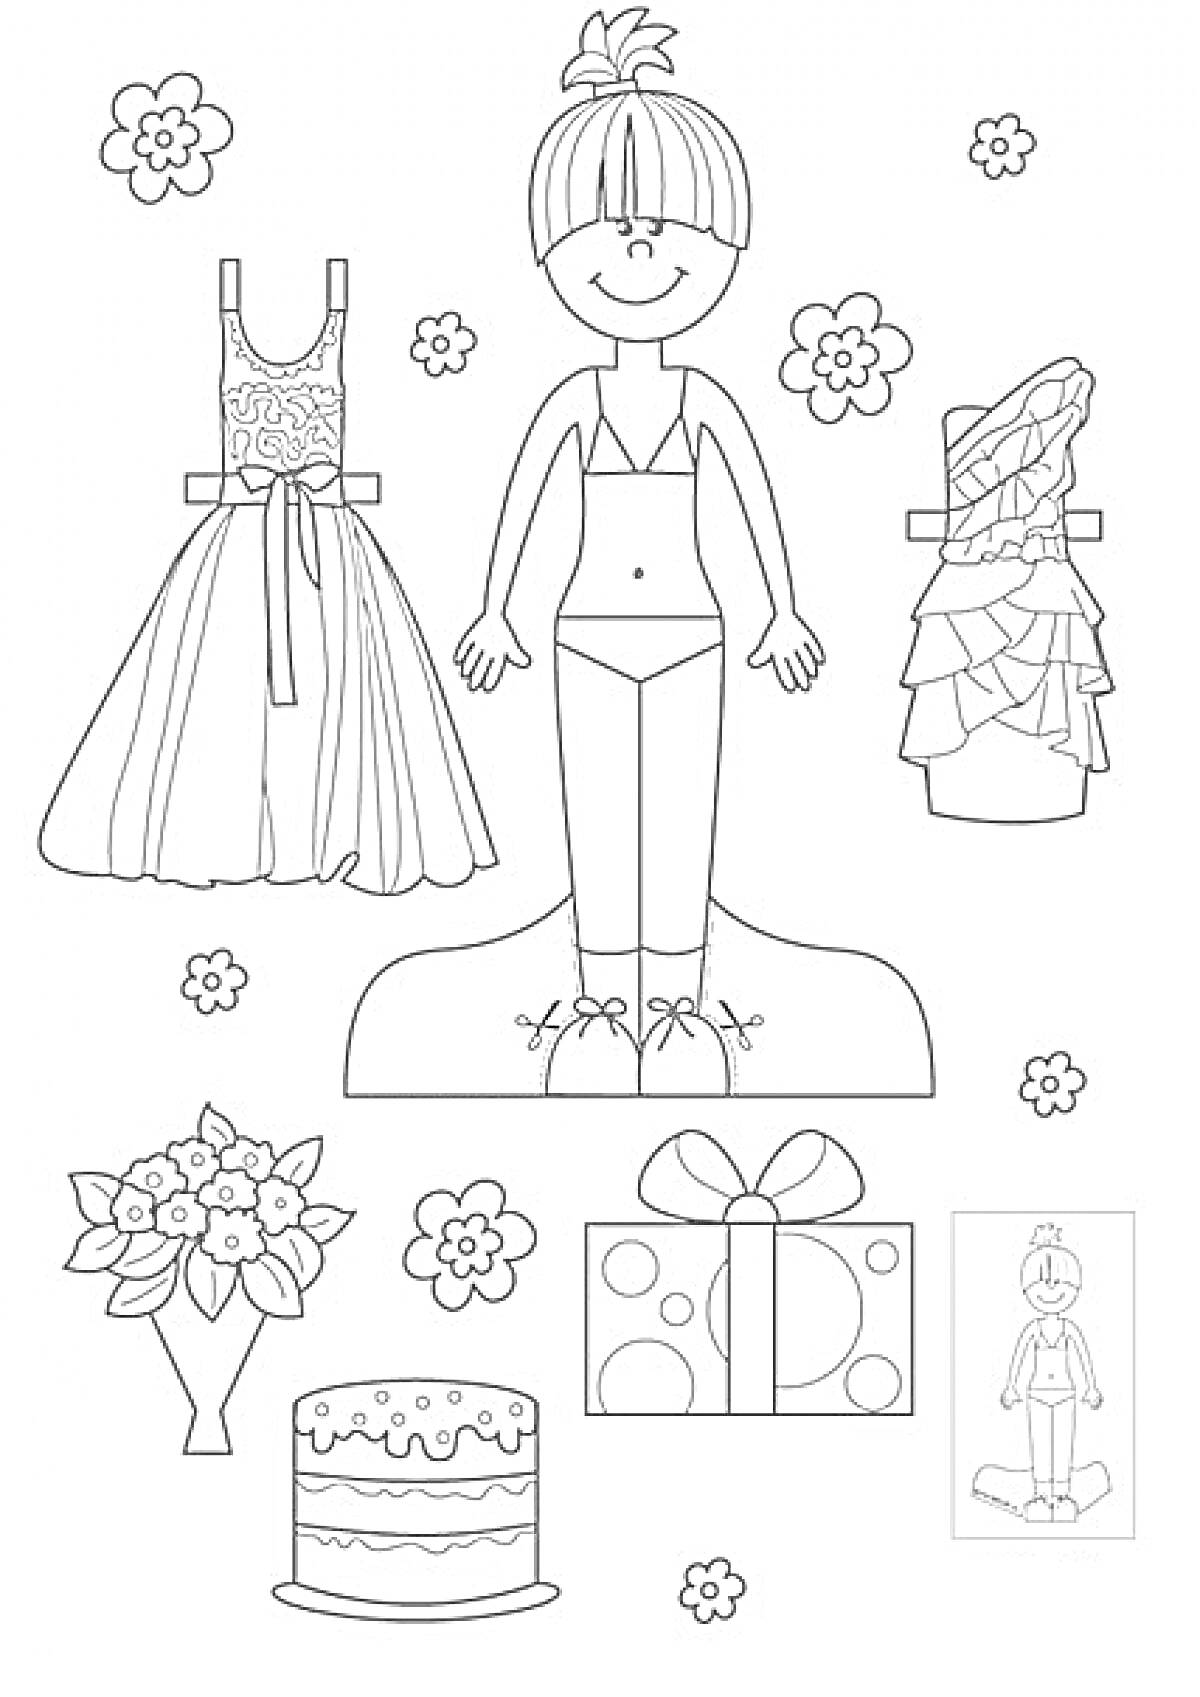 Раскраска Бумажная кукла с вечерним и повседневным платьями, цветами, подарком и тортом.